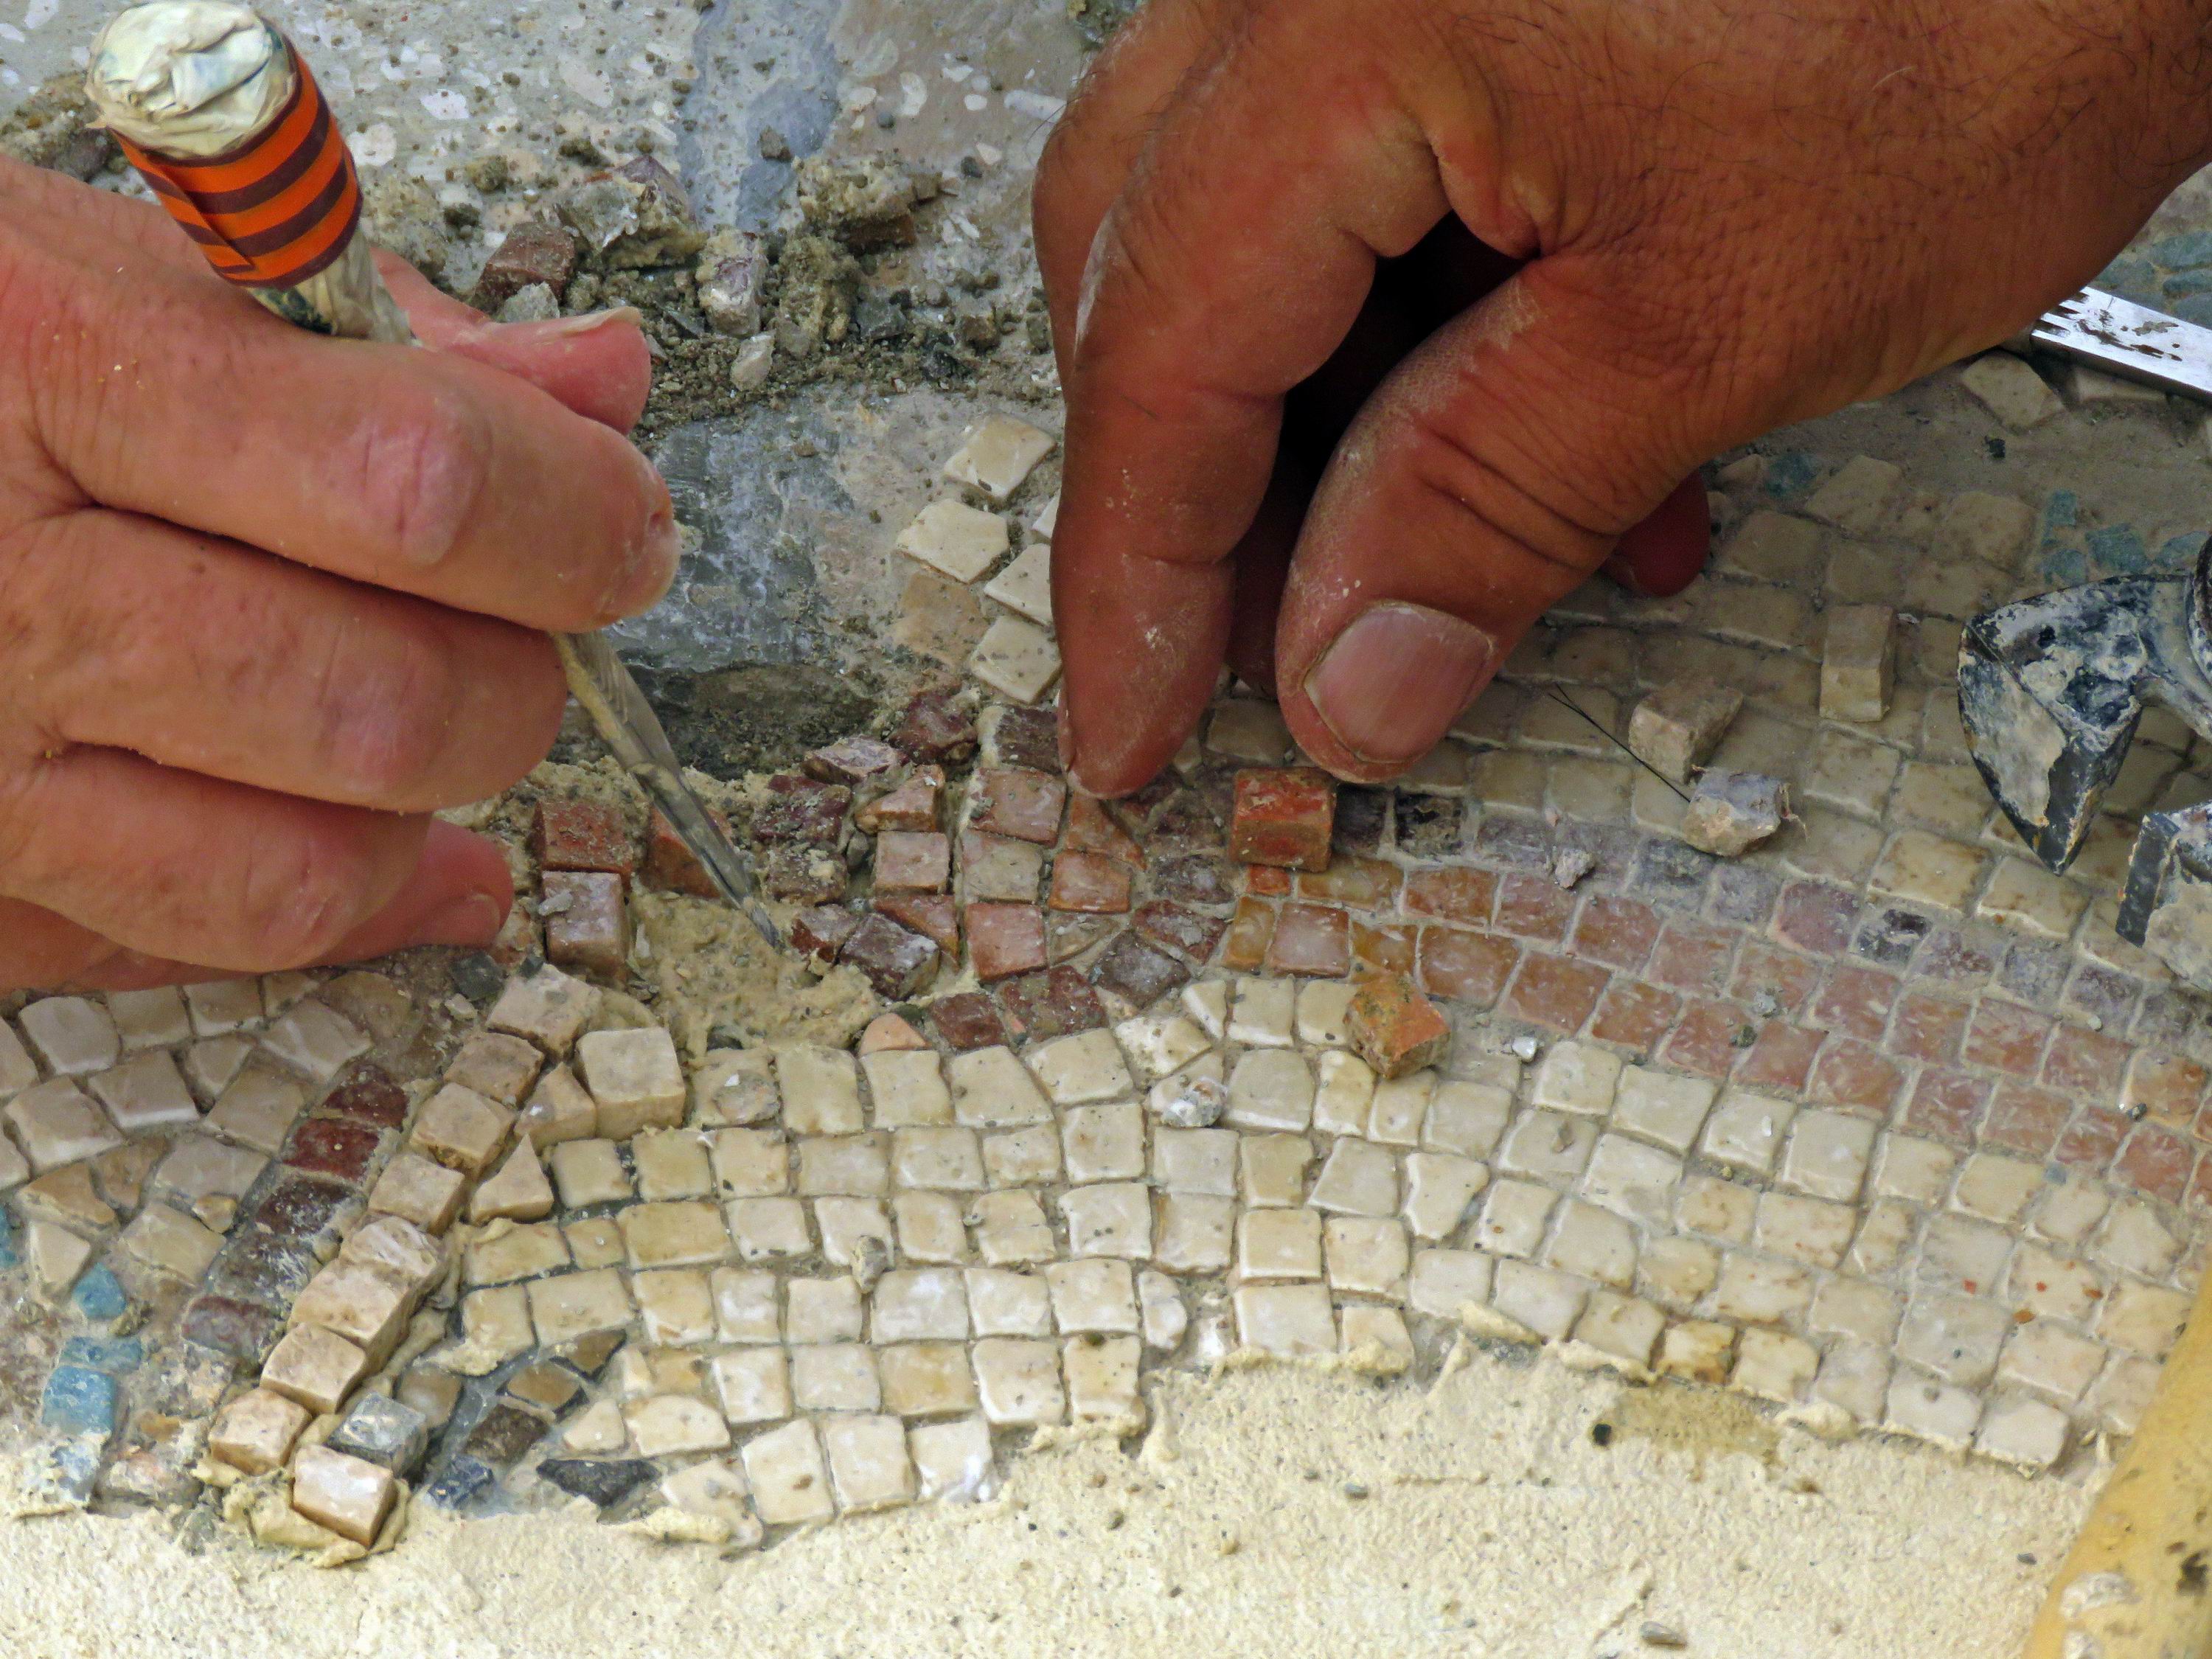 עובדי רשות העתיקות במהלך שימור הפסיפס. צילום: ניקי דוידוב